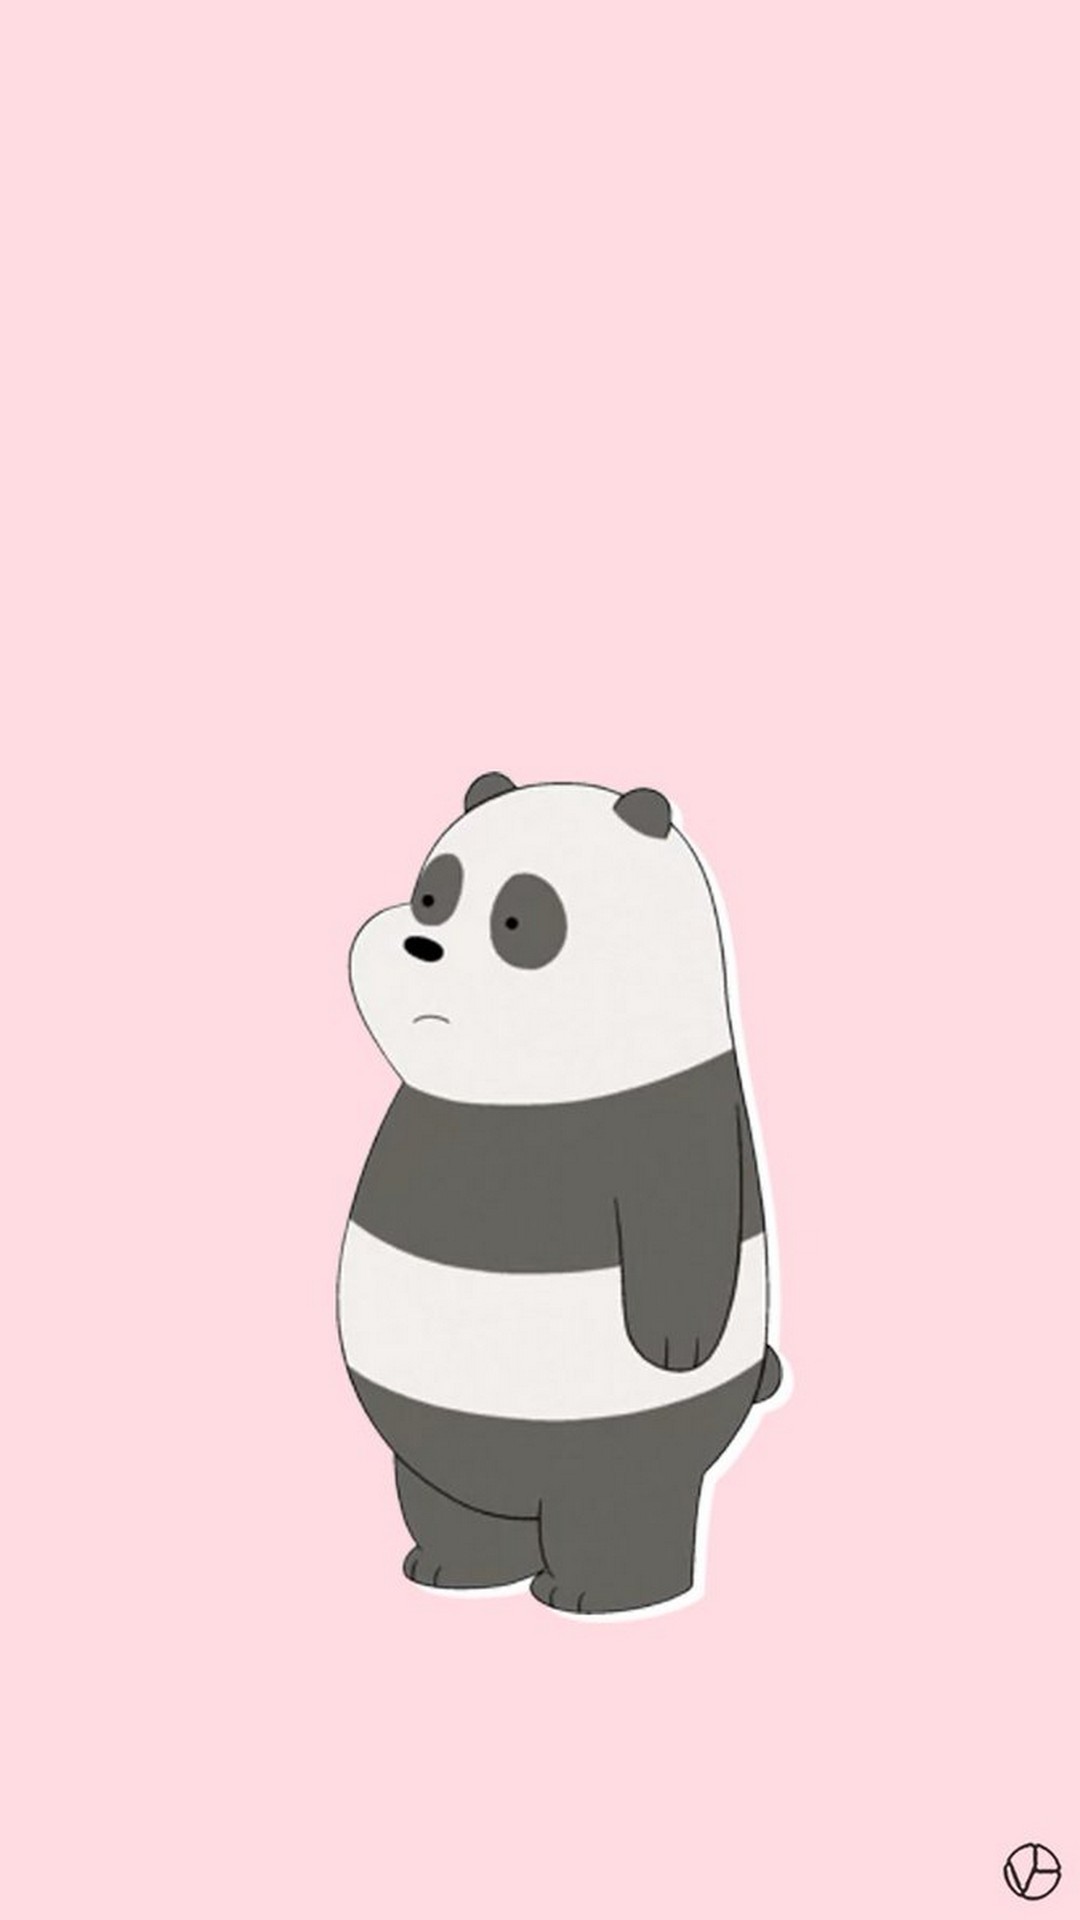 1080x1920 2560x1600 Fresh Cute Panda Wallpaper Iphone X Wallpapers Hd. Tarepanda  Pirates